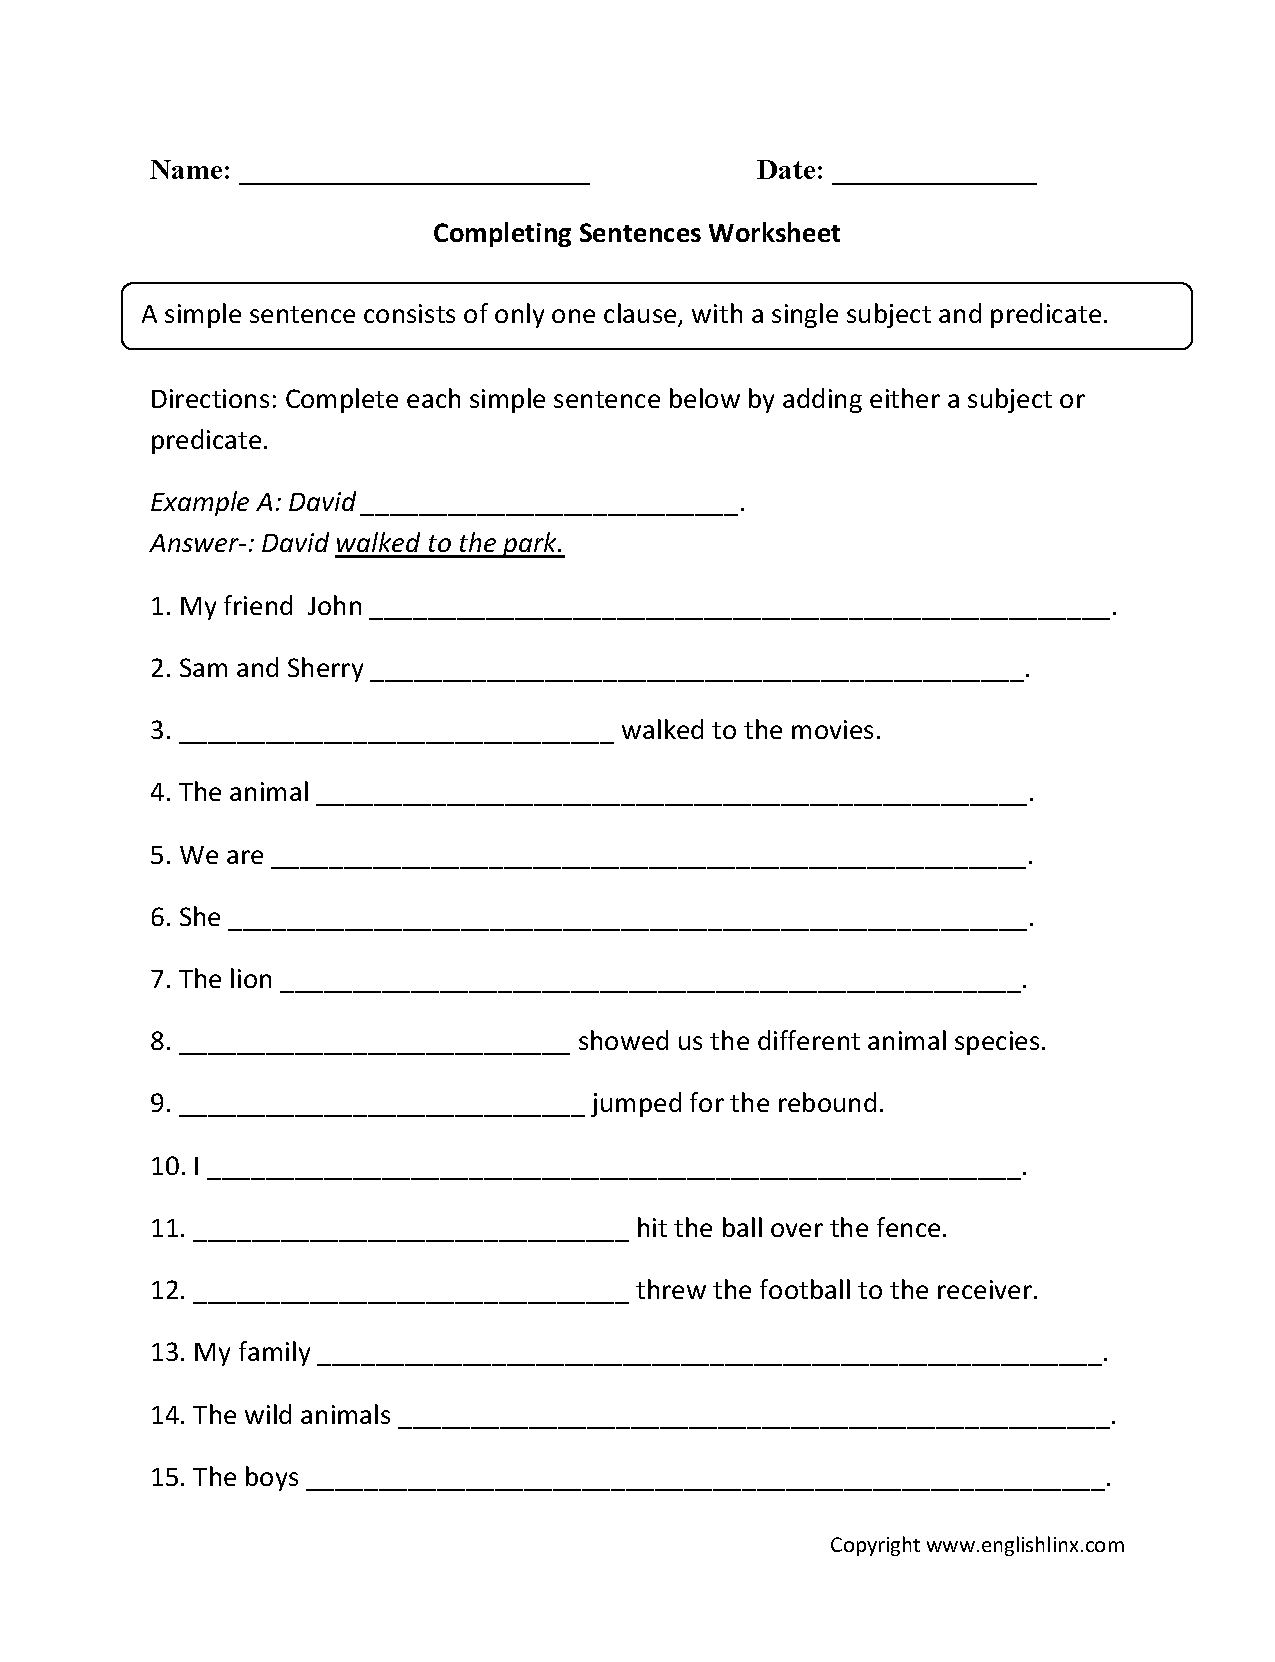 Completing Sentence Worksheet